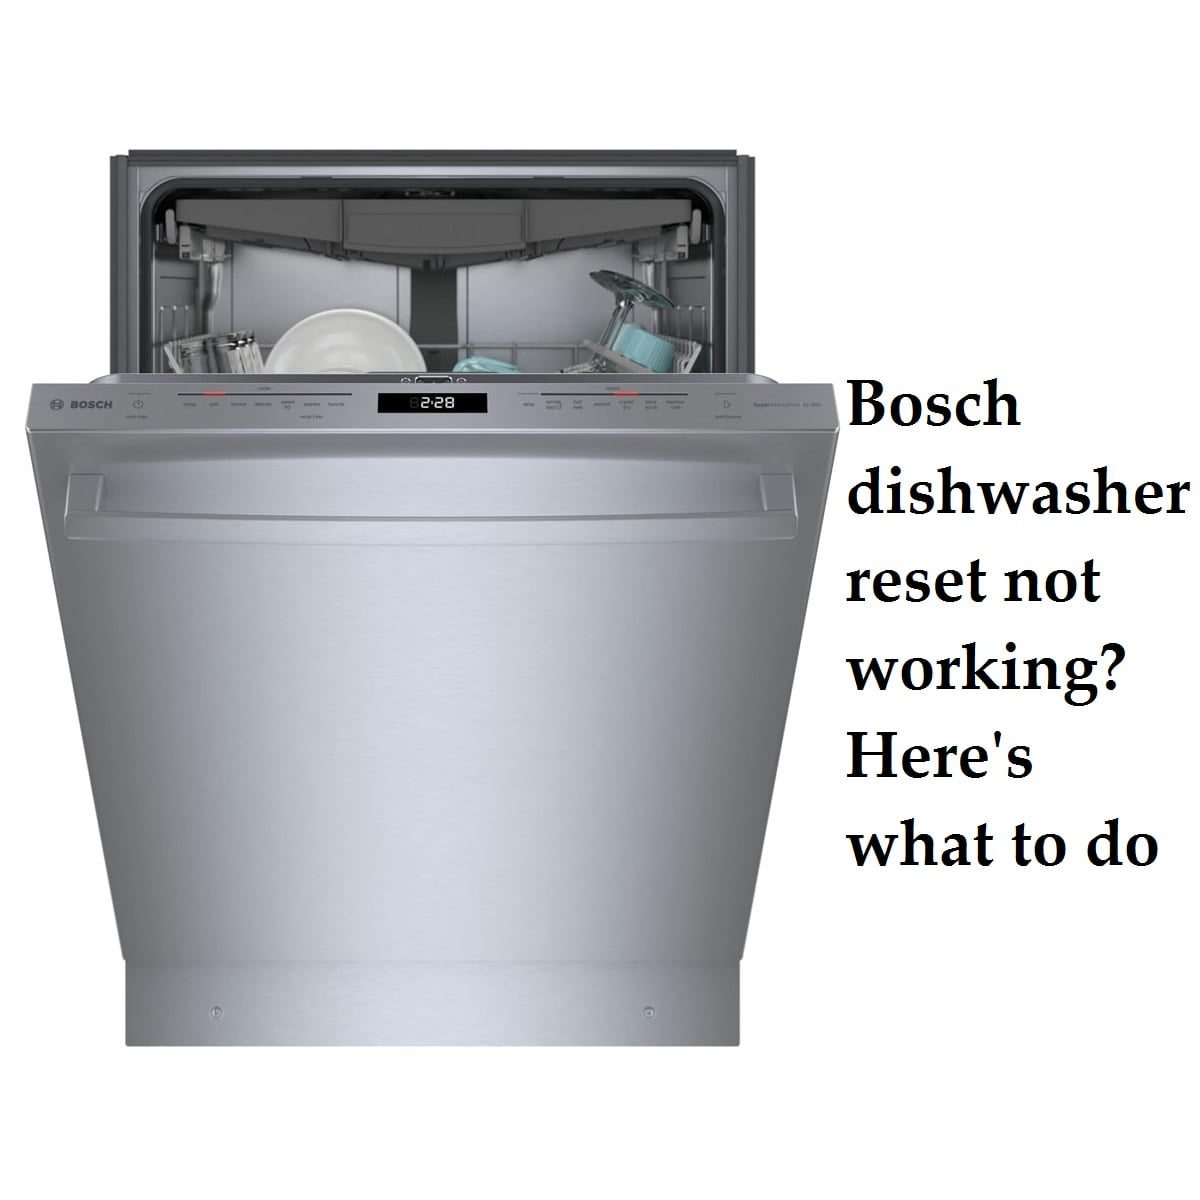 Bosch dishwasher reset not working